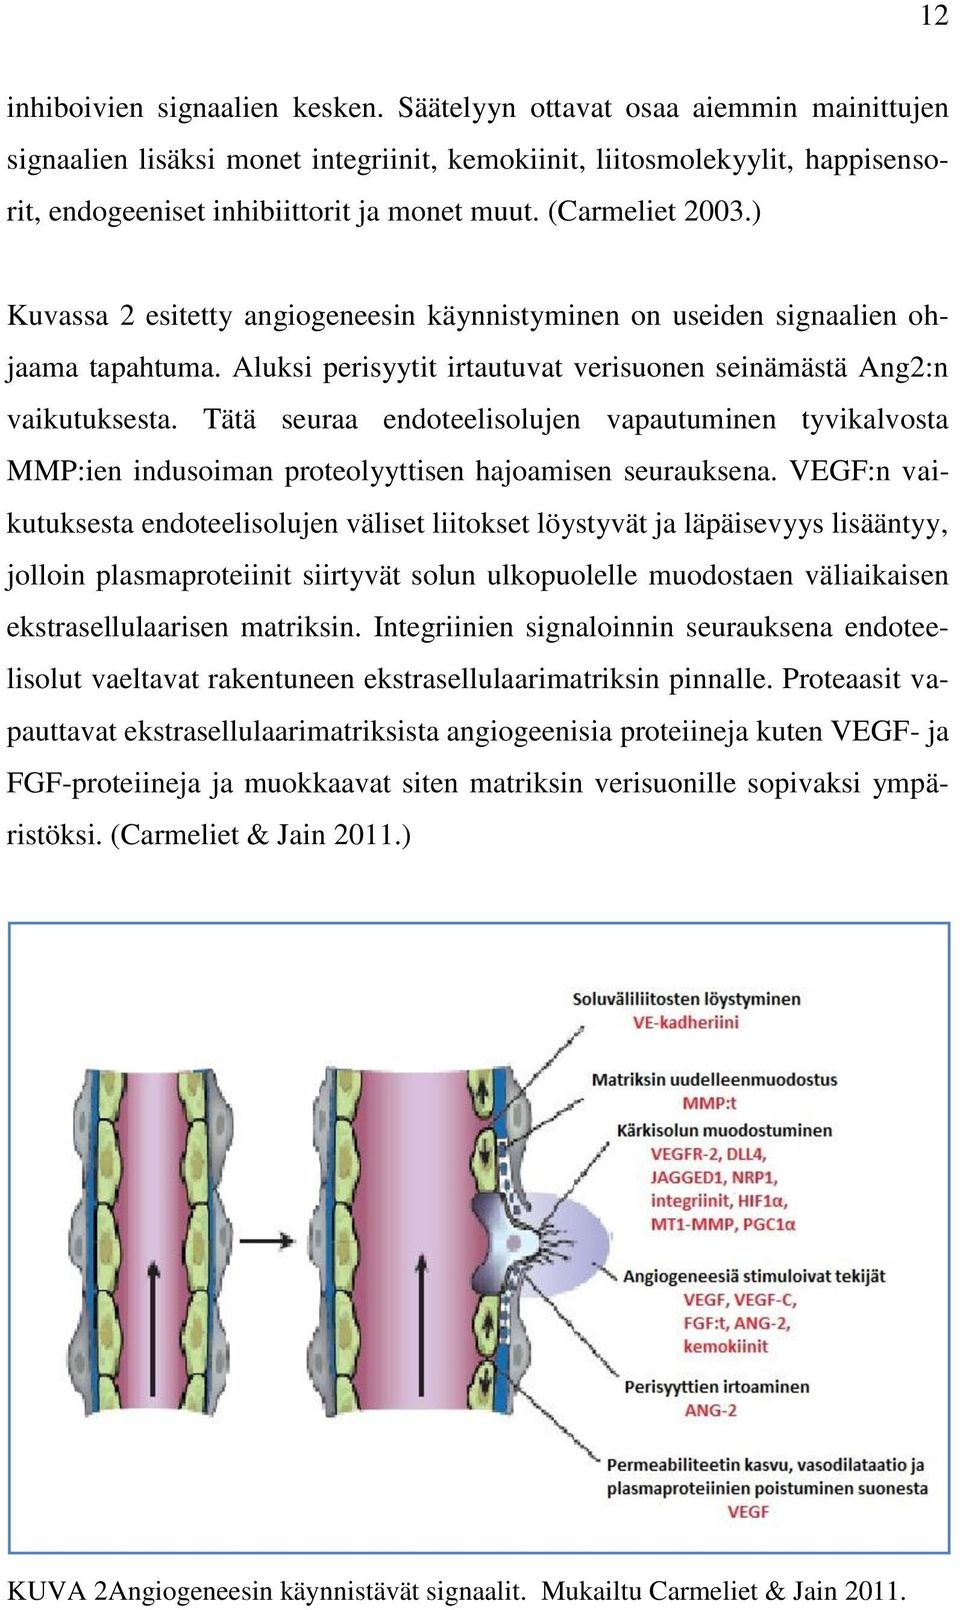 ) Kuvassa 2 esitetty angiogeneesin käynnistyminen on useiden signaalien ohjaama tapahtuma. Aluksi perisyytit irtautuvat verisuonen seinämästä Ang2:n vaikutuksesta.